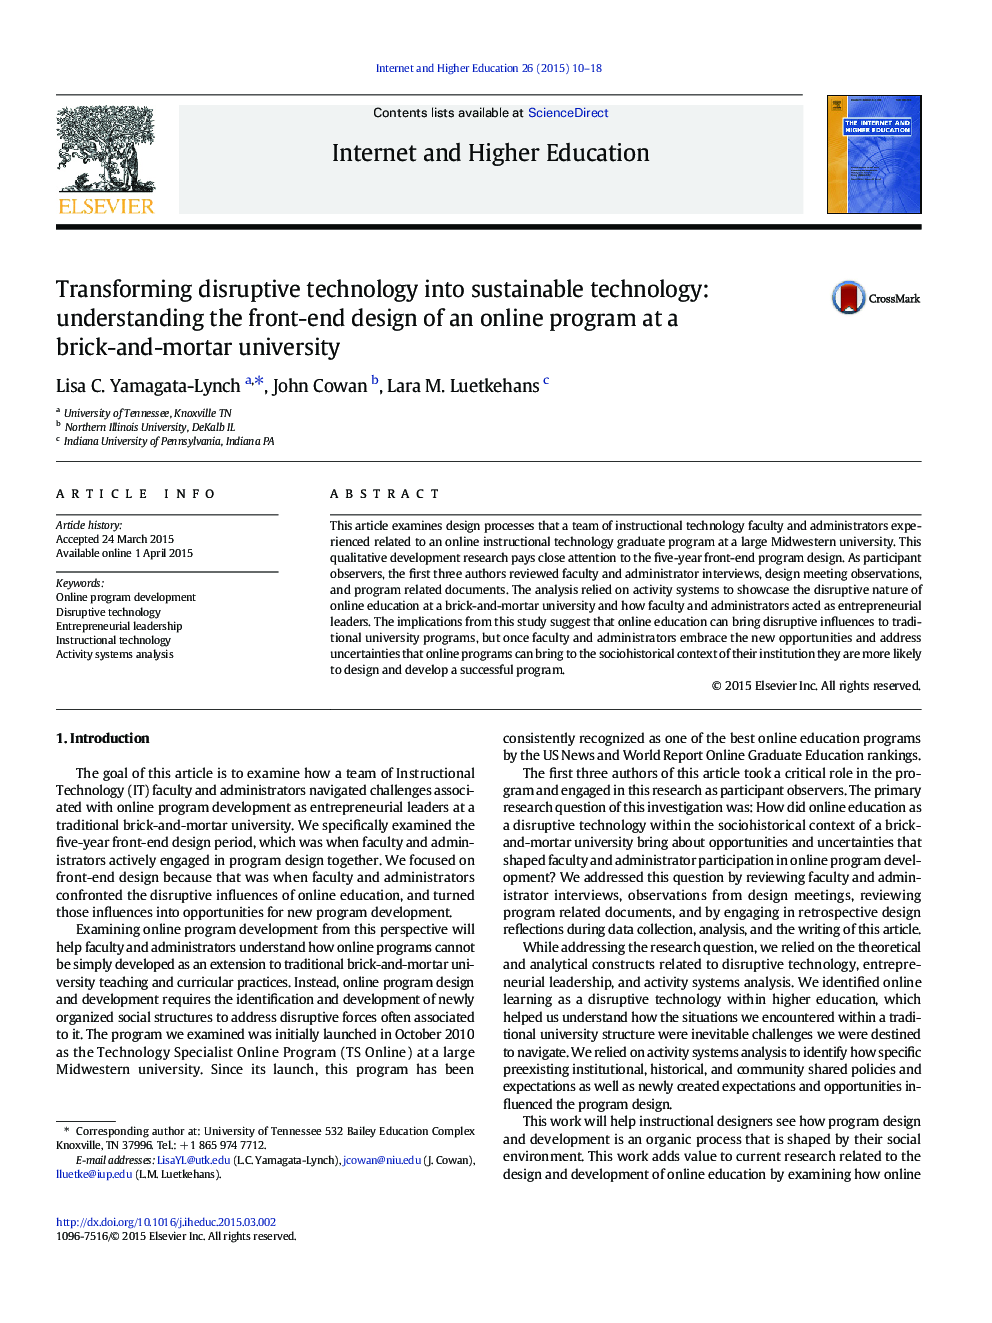 تبدیل تکنولوژی مخرب به تکنولوژی پایدار: درک جلویی طراحی یک برنامه آنلاین در یک دانشگاه